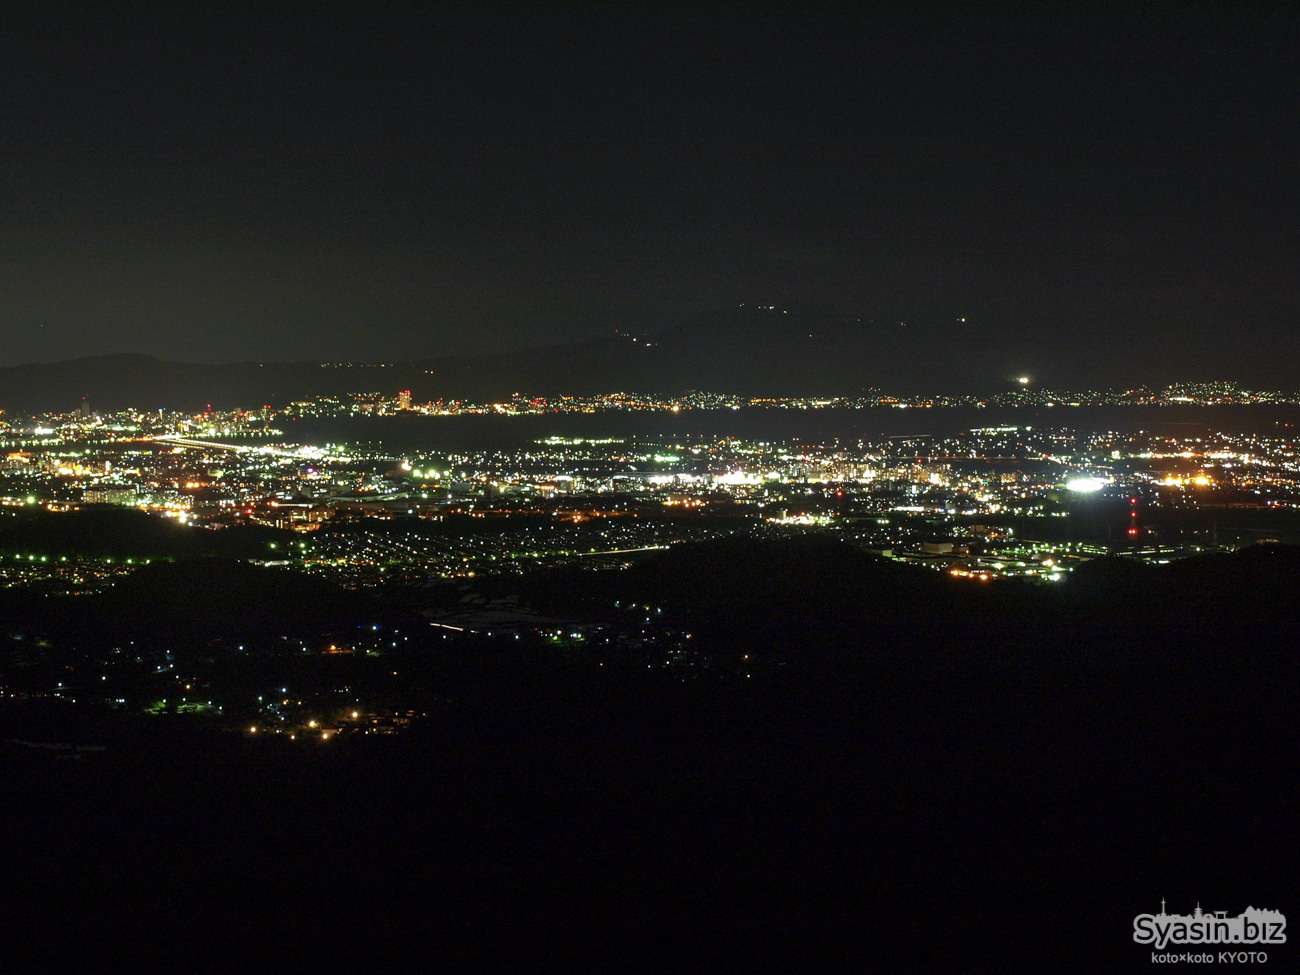 金勝アルプス 耳岩の夜景 – 滋賀県栗東市